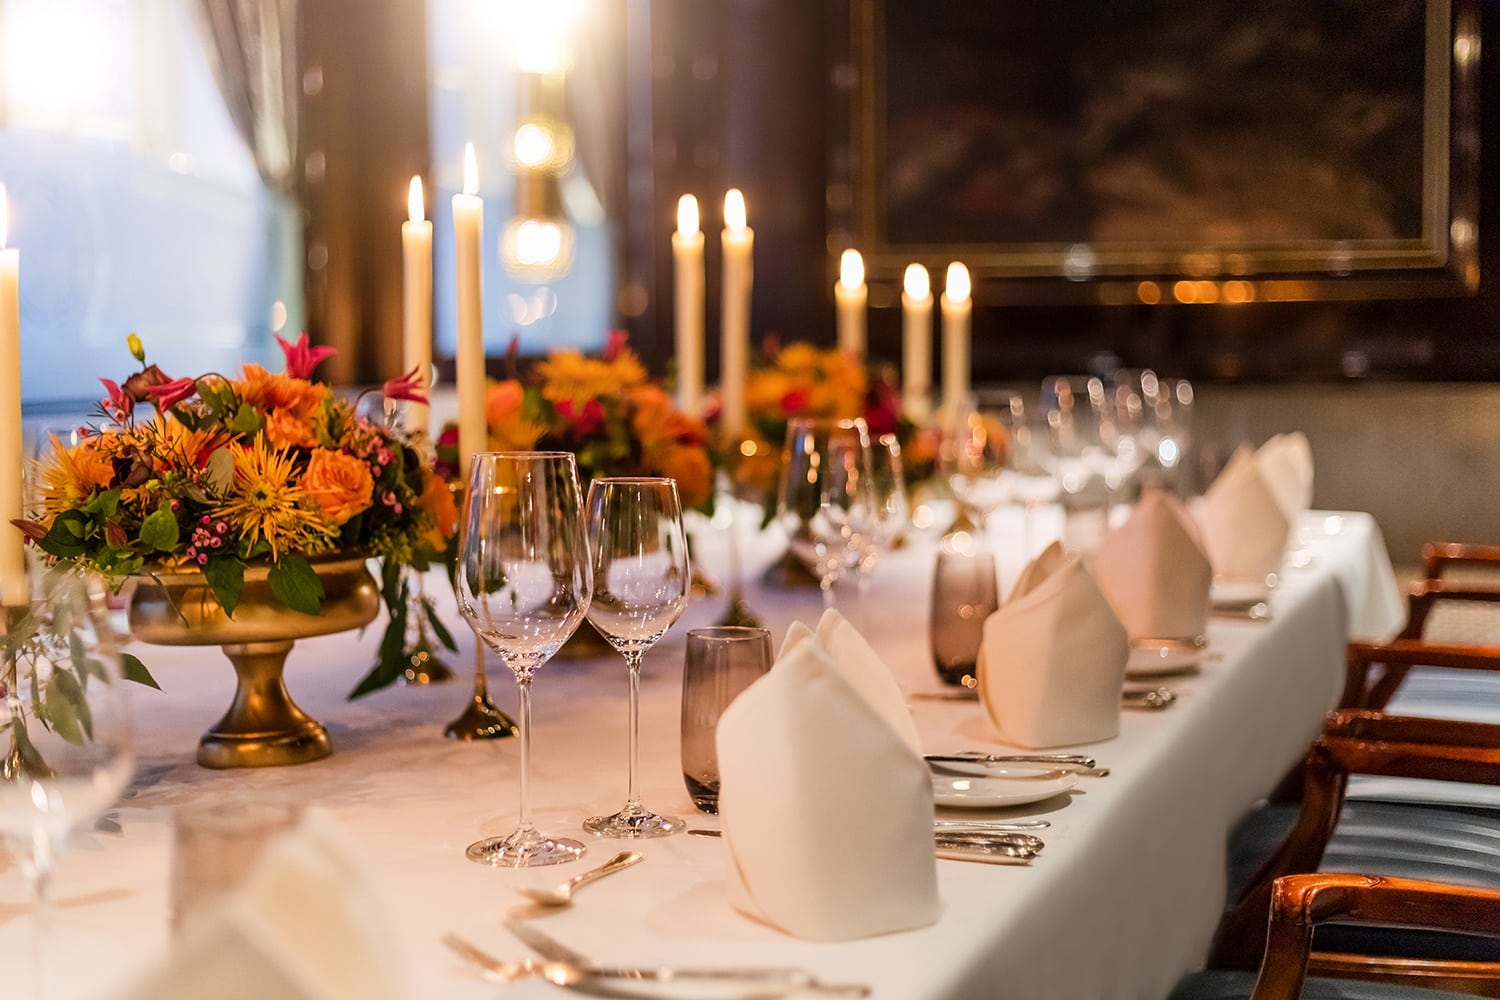 Tisch mit weißer Tischdecke und Dekoration ist mit Weingläsern, Servietten und Besteck eingedeckt